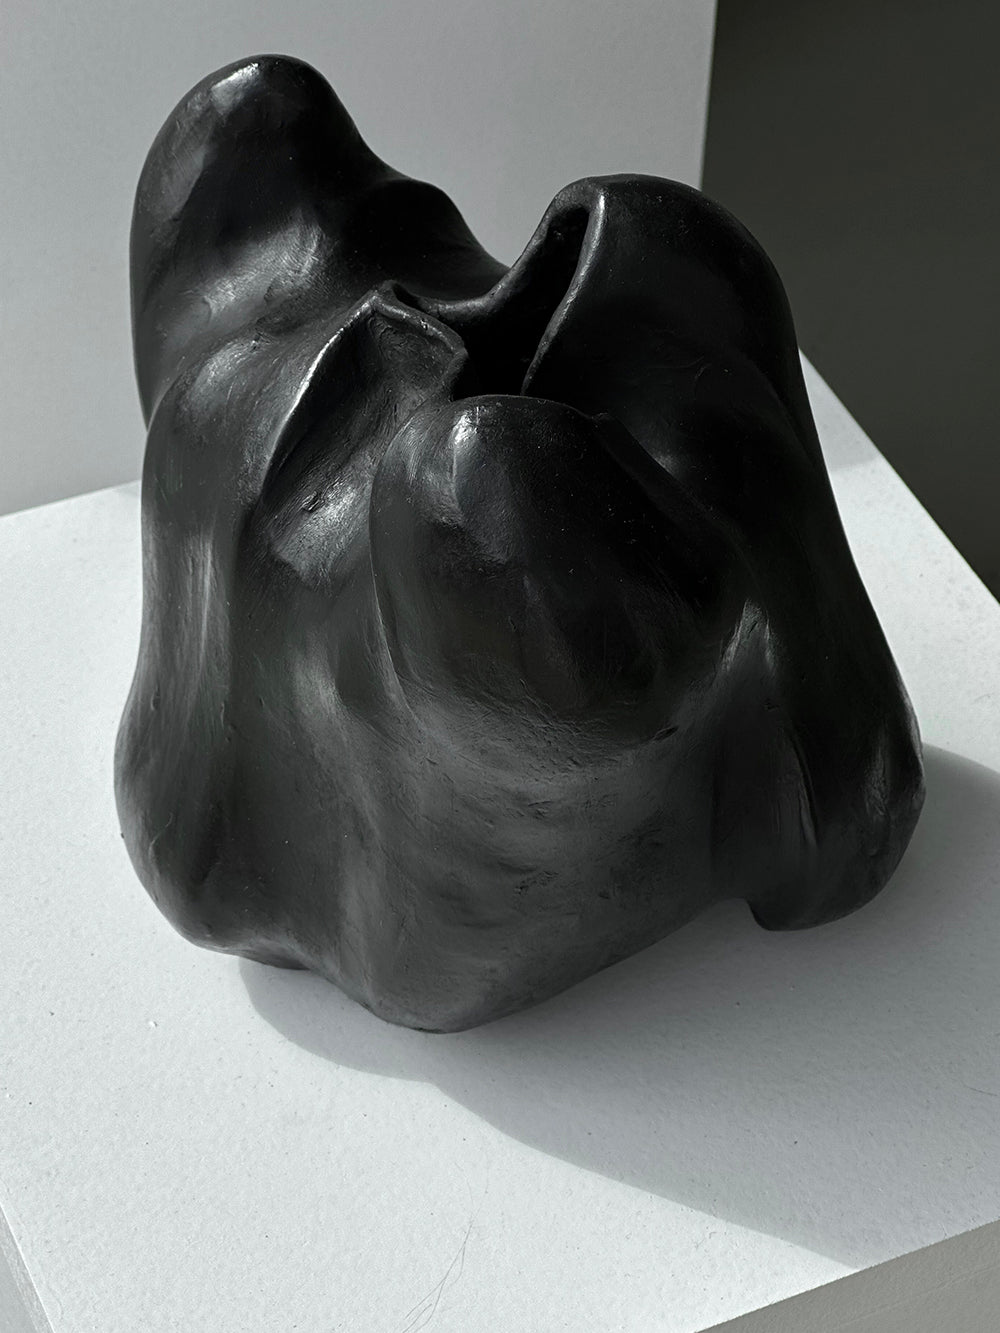 Sculpture, "No titel", Black